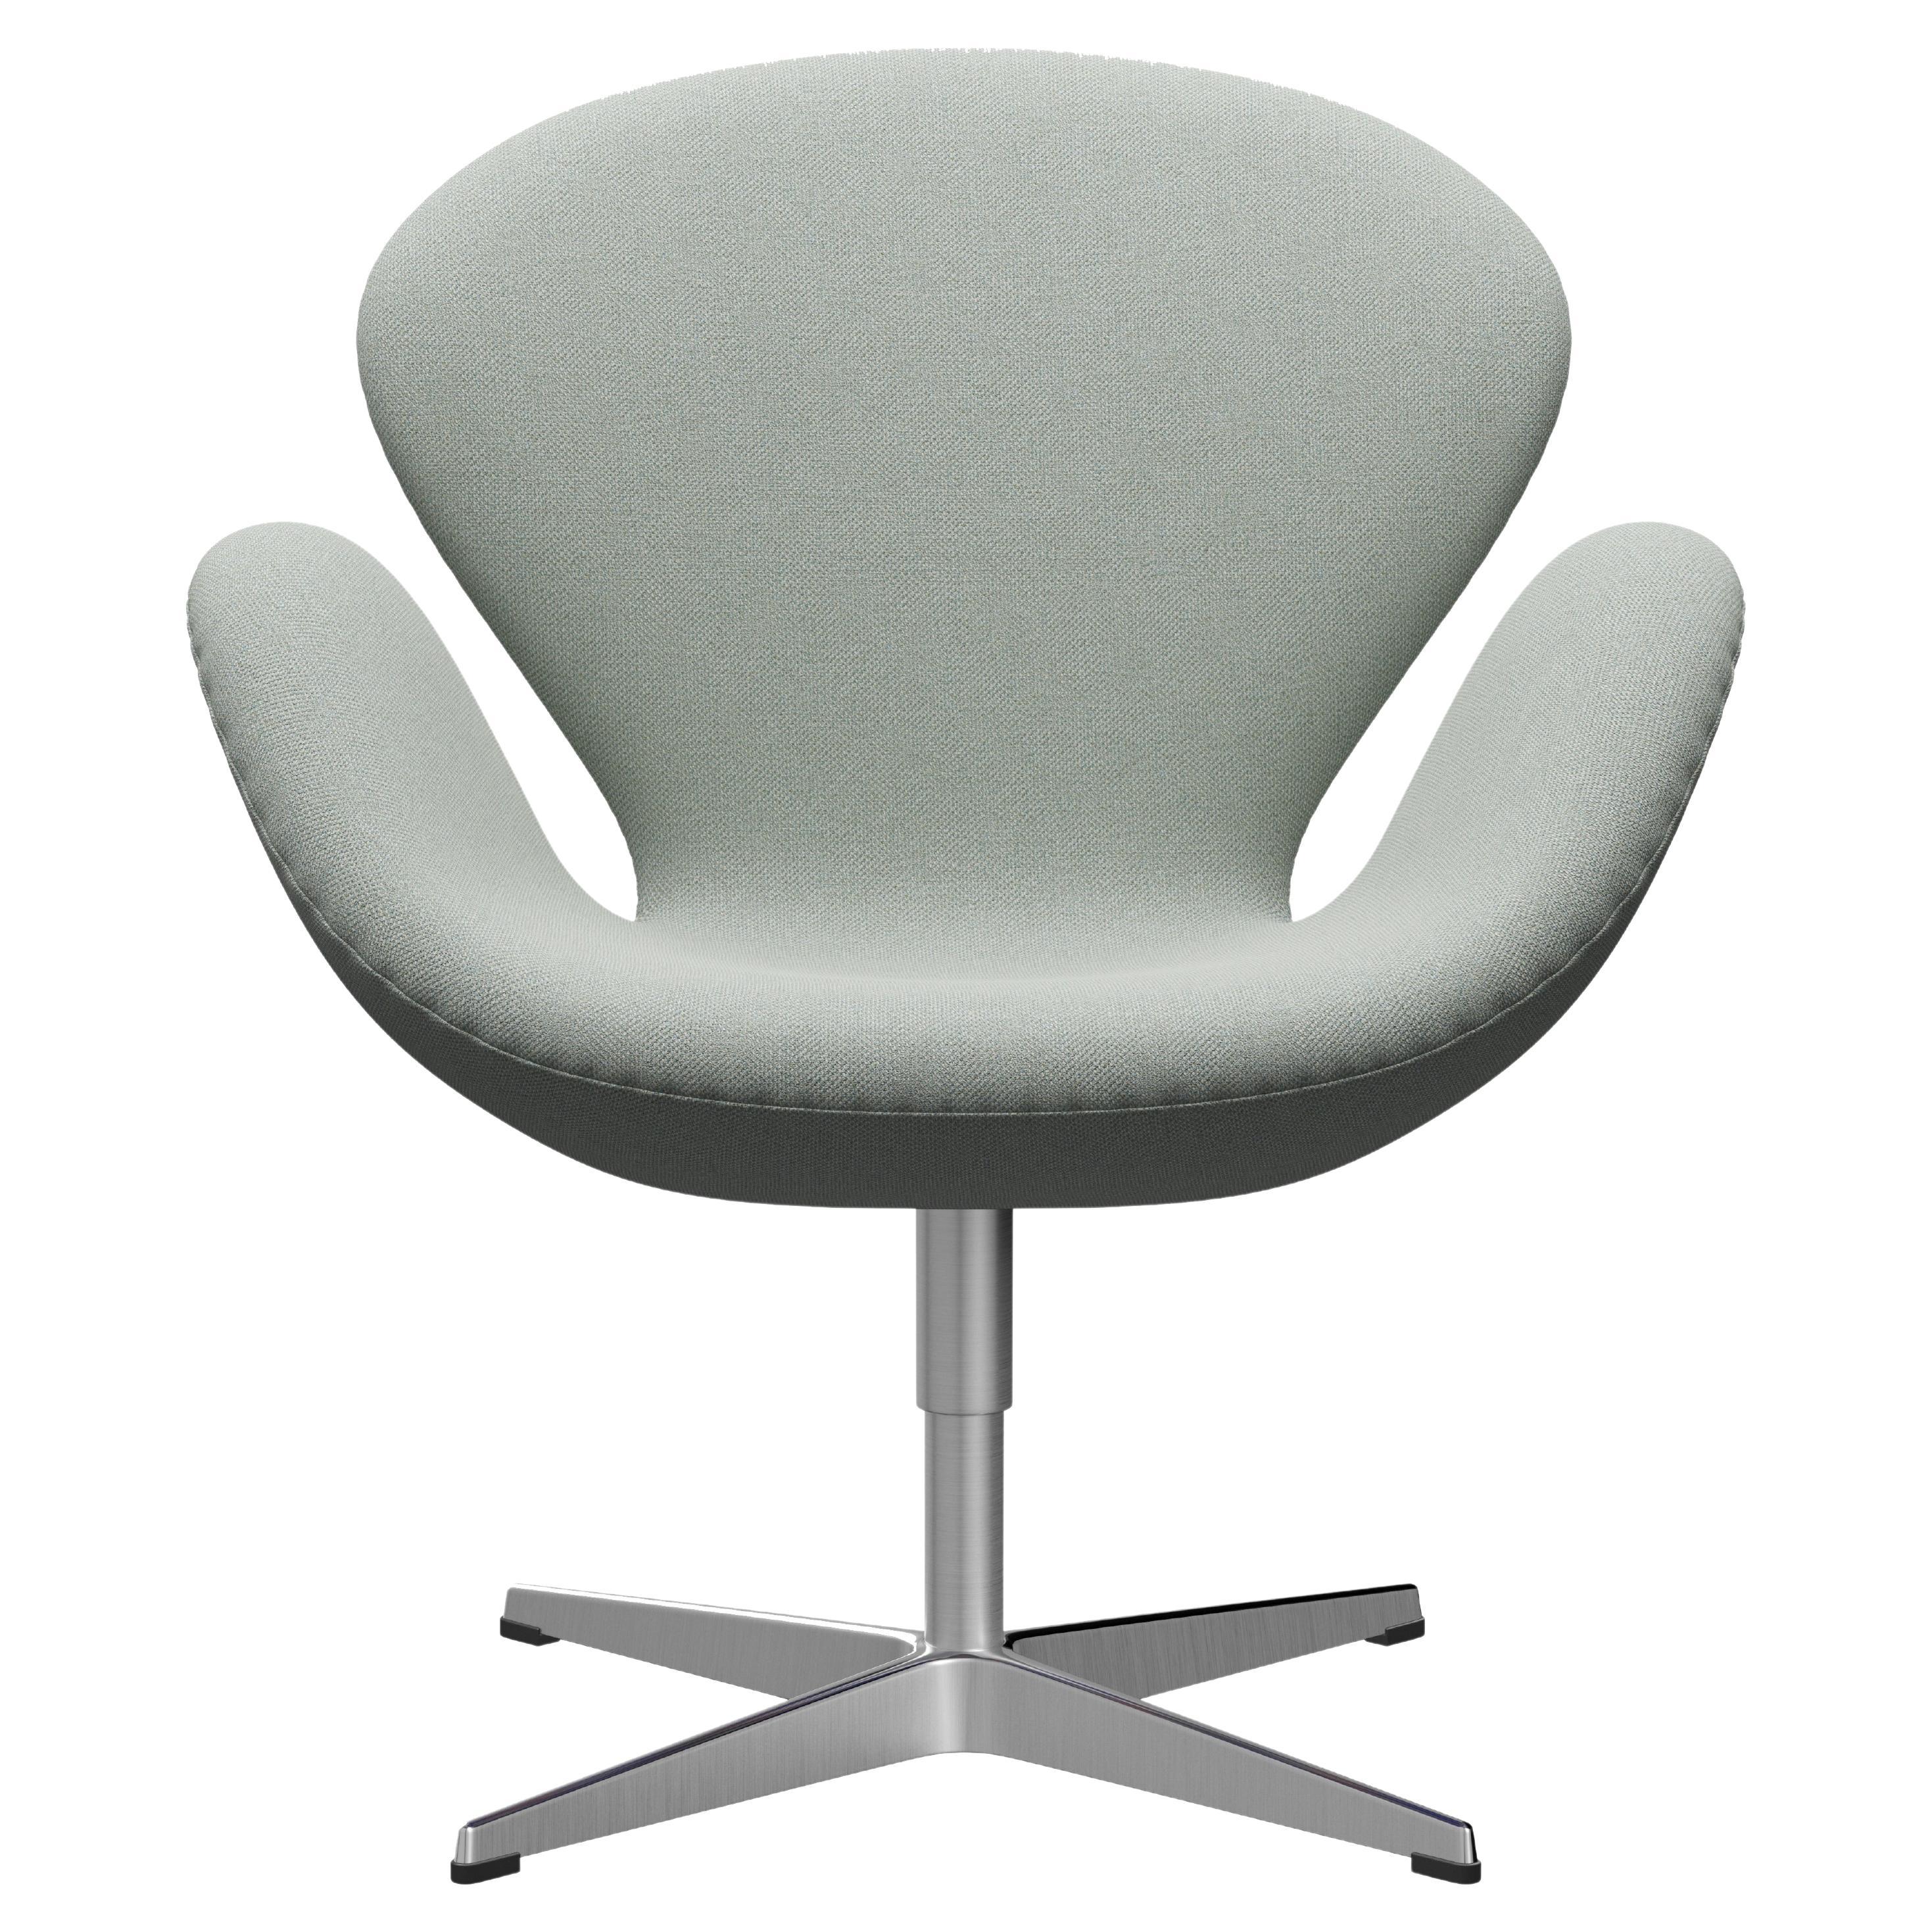 Arne Jacobsen 'Swan' Chair for Fritz Hansen in Fabric Upholstery (Cat. 2) For Sale